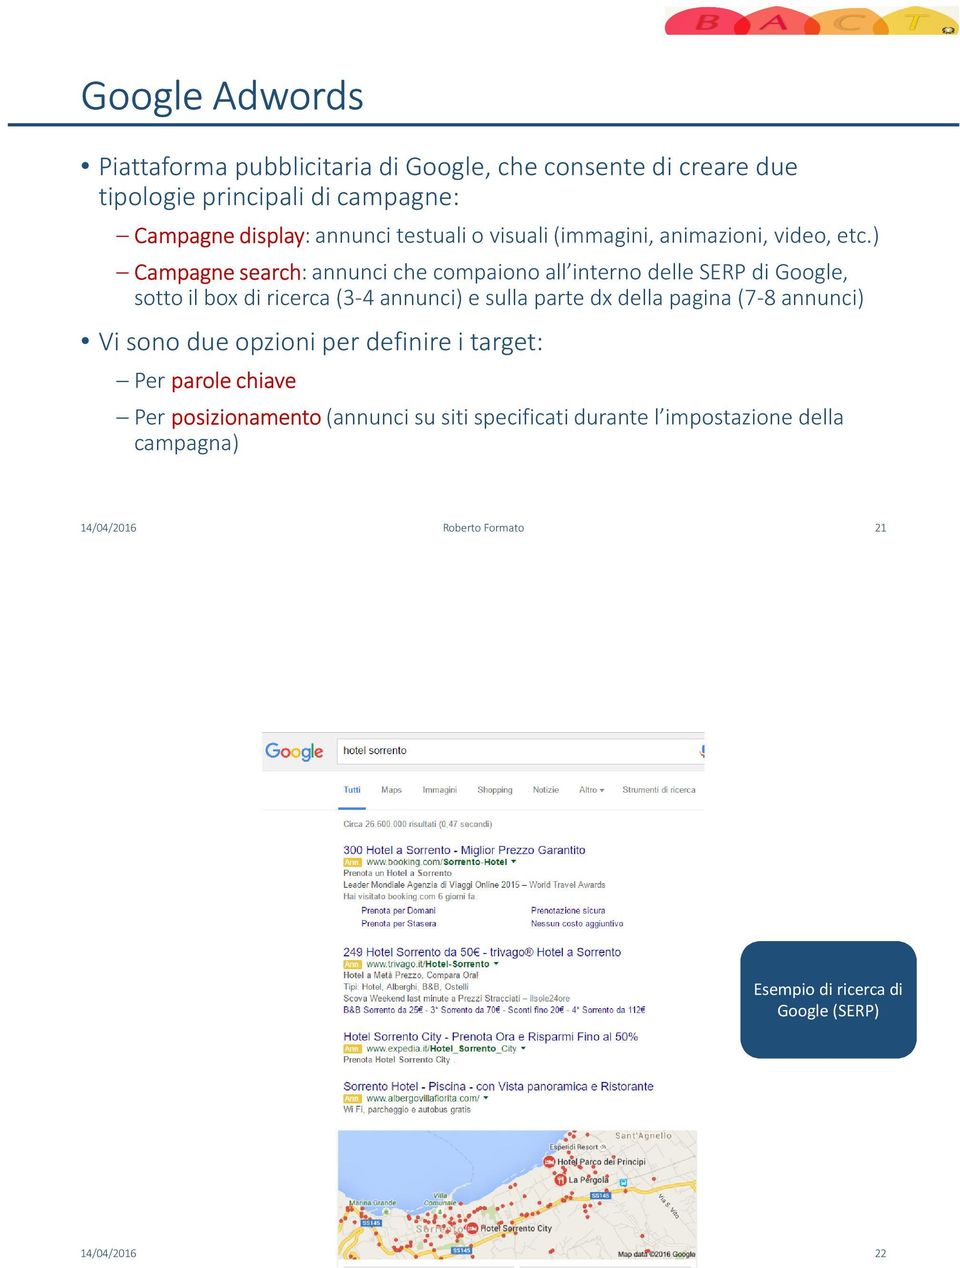 ) Campagne search: annunci che compaiono all interno delle SERP di Google, sotto il box di ricerca (3-4 annunci) e sulla parte dx della pagina (7-8